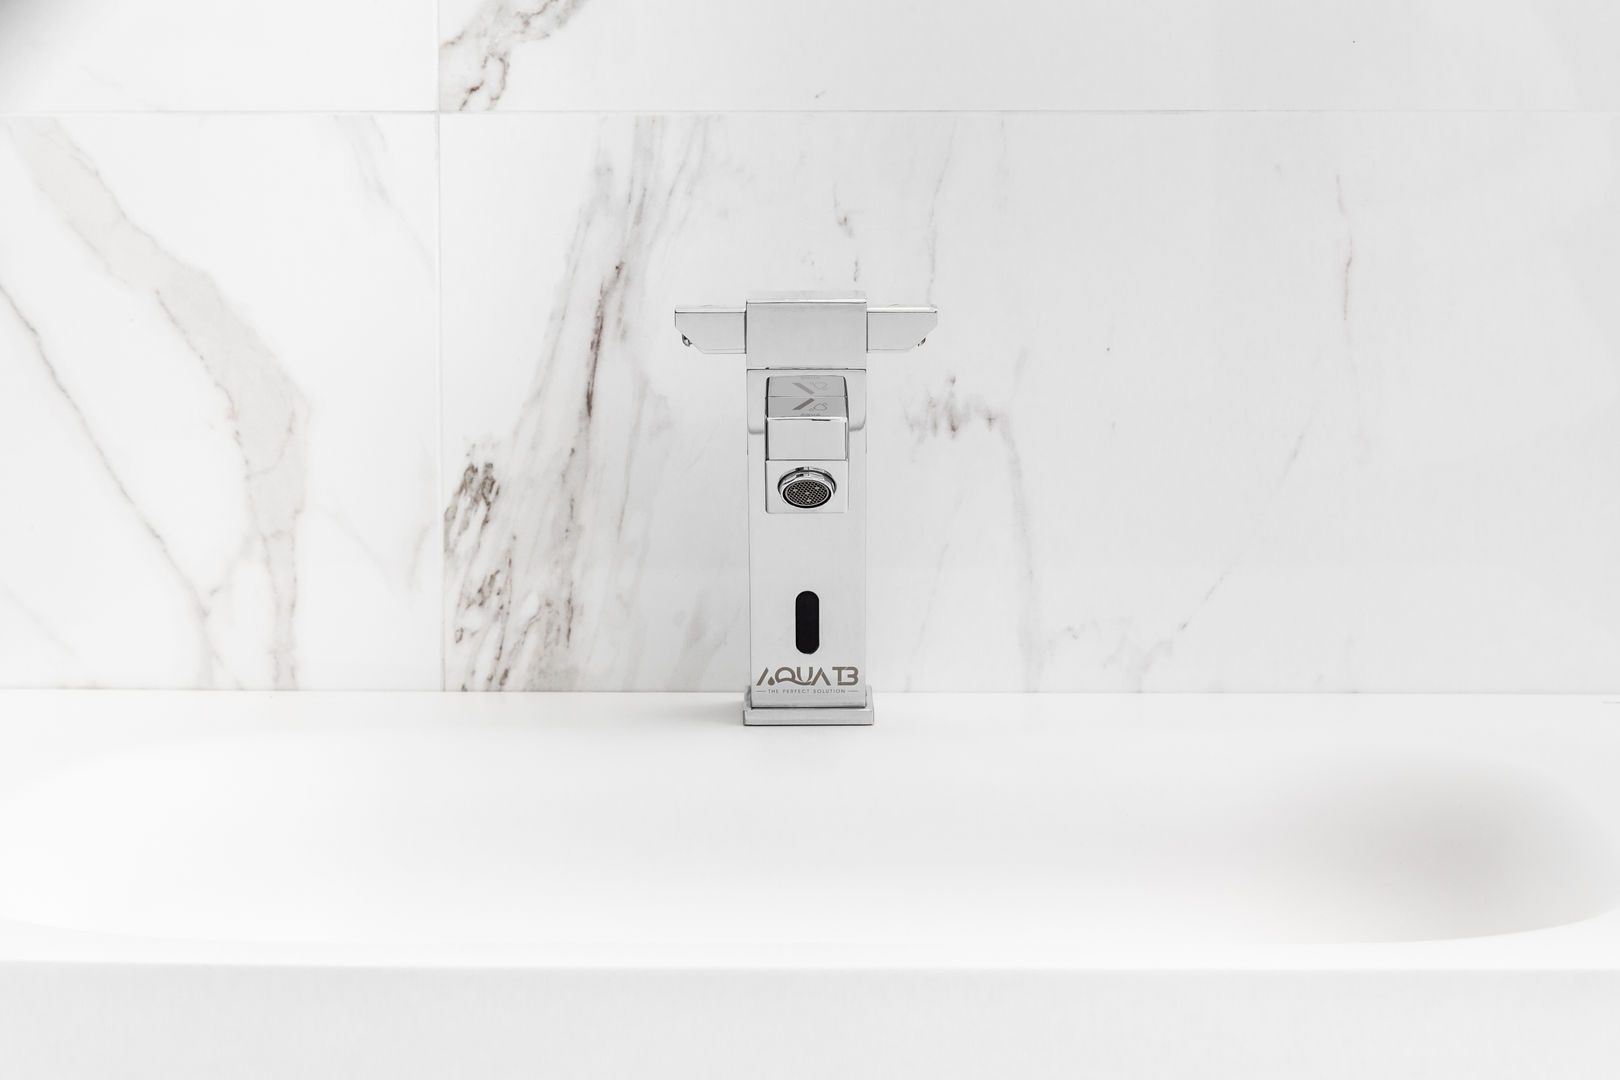 Modelo Quadra Aqua T3 - The Perfect Solution Casas de banho modernas Cobre/Bronze/Latão casa de banho, lavagem de mãos, torneira, torneira automática,Pia